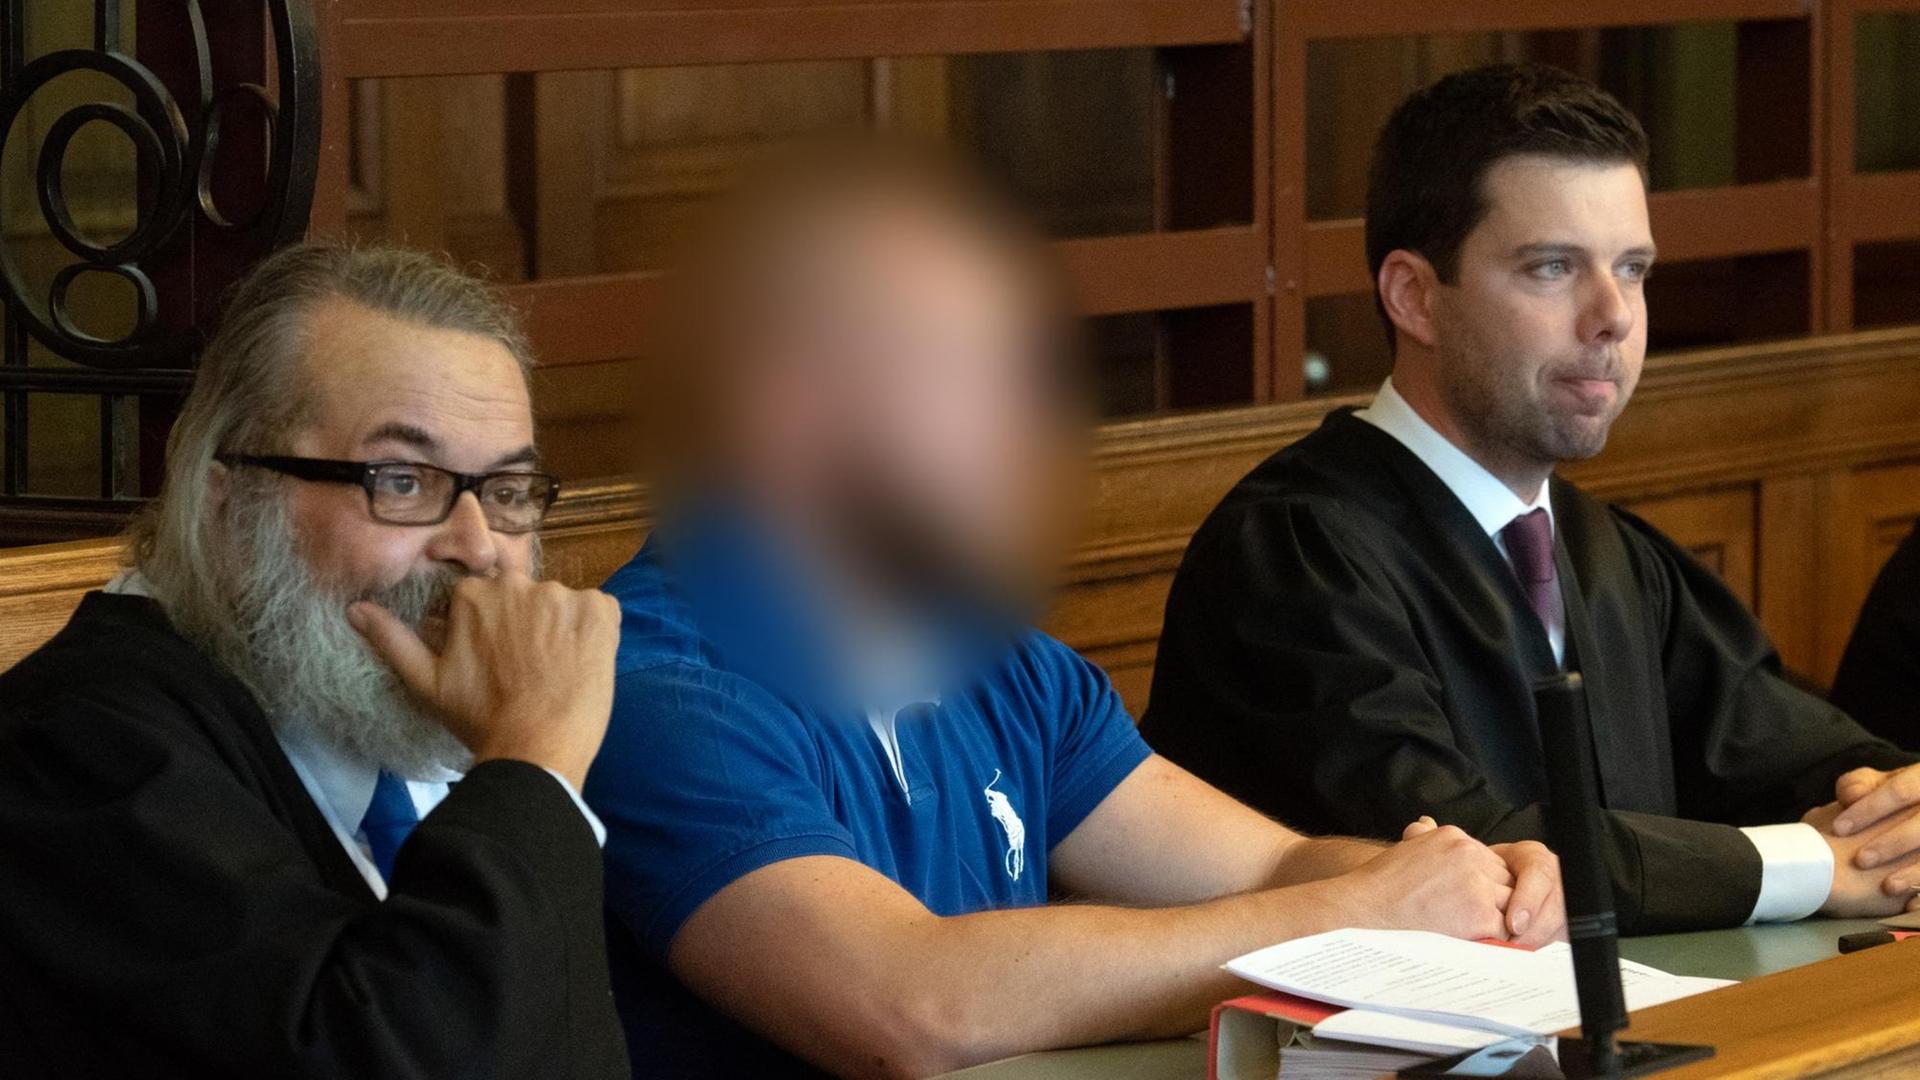 Einer der Angeklagten (M) sitzt im Gerichtssaal in Berlin. Dort muß er sich mit einem weiteren Angeklagten erneut wegen des illegalem Autorennens mit tödlichem Ausgang auf dem Kurfürstendamm verantworten.